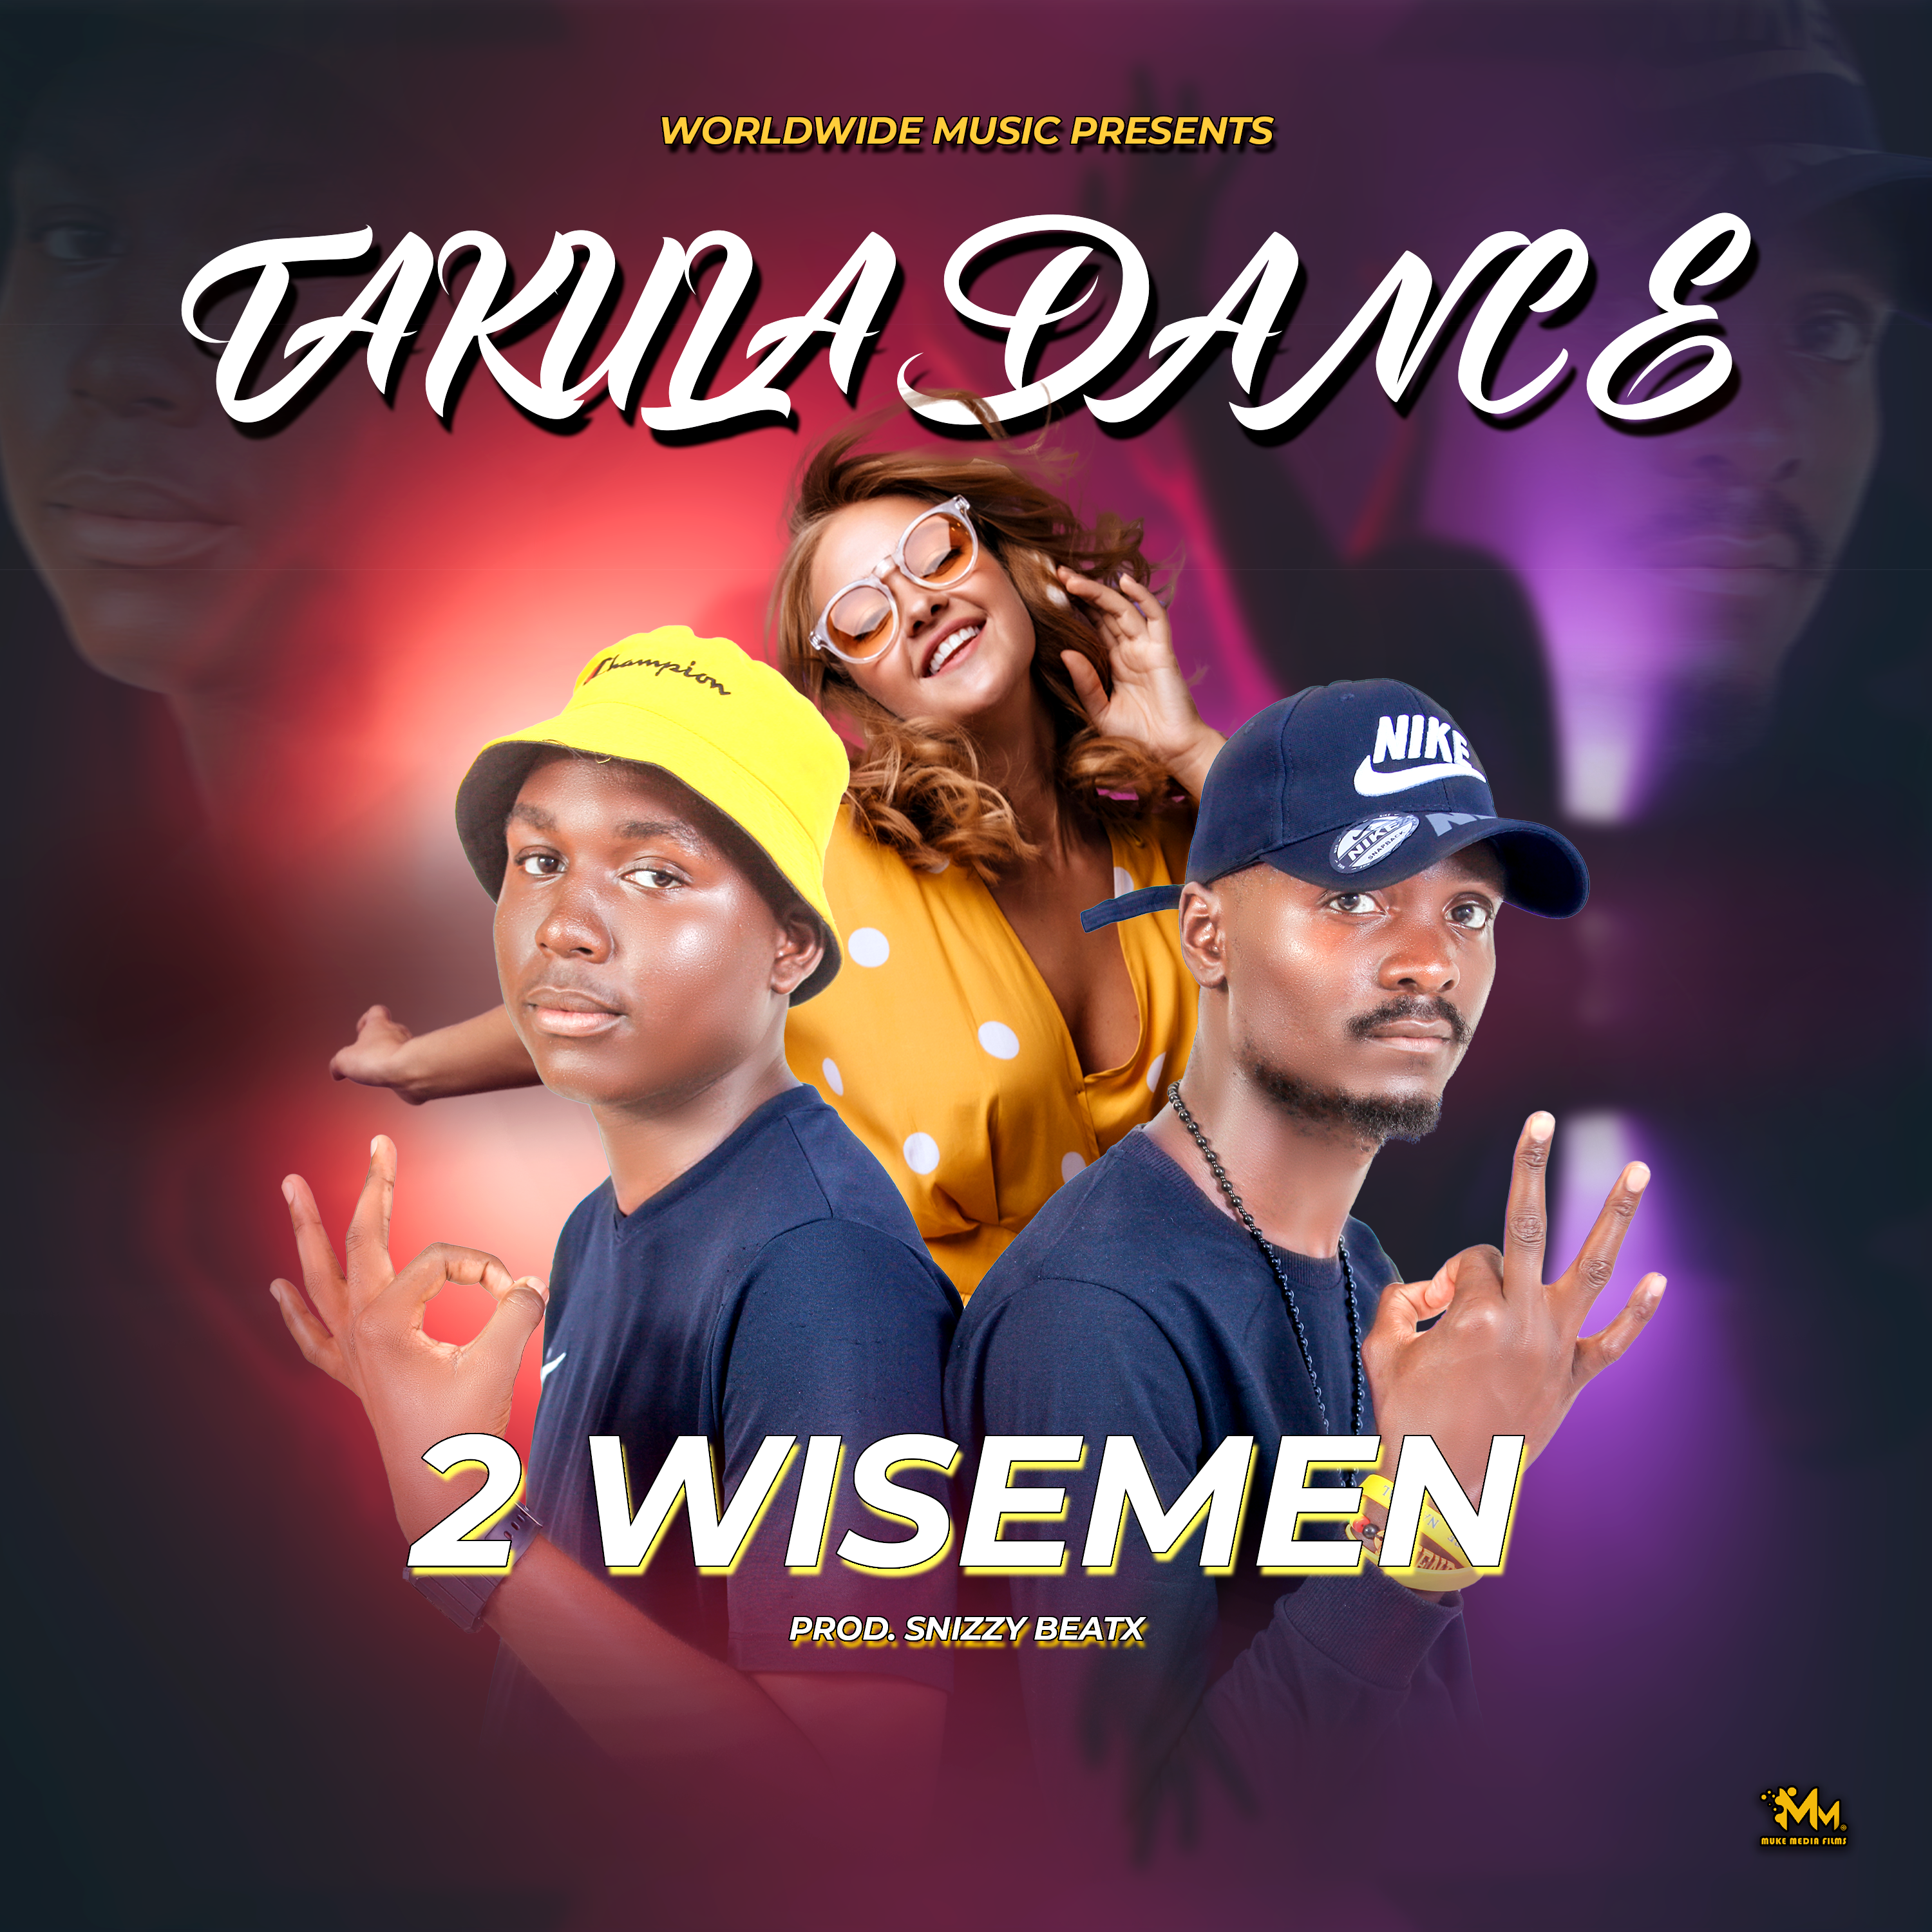 2 Wisemen - Takula Dance (Prod By SnizzyBeatx)